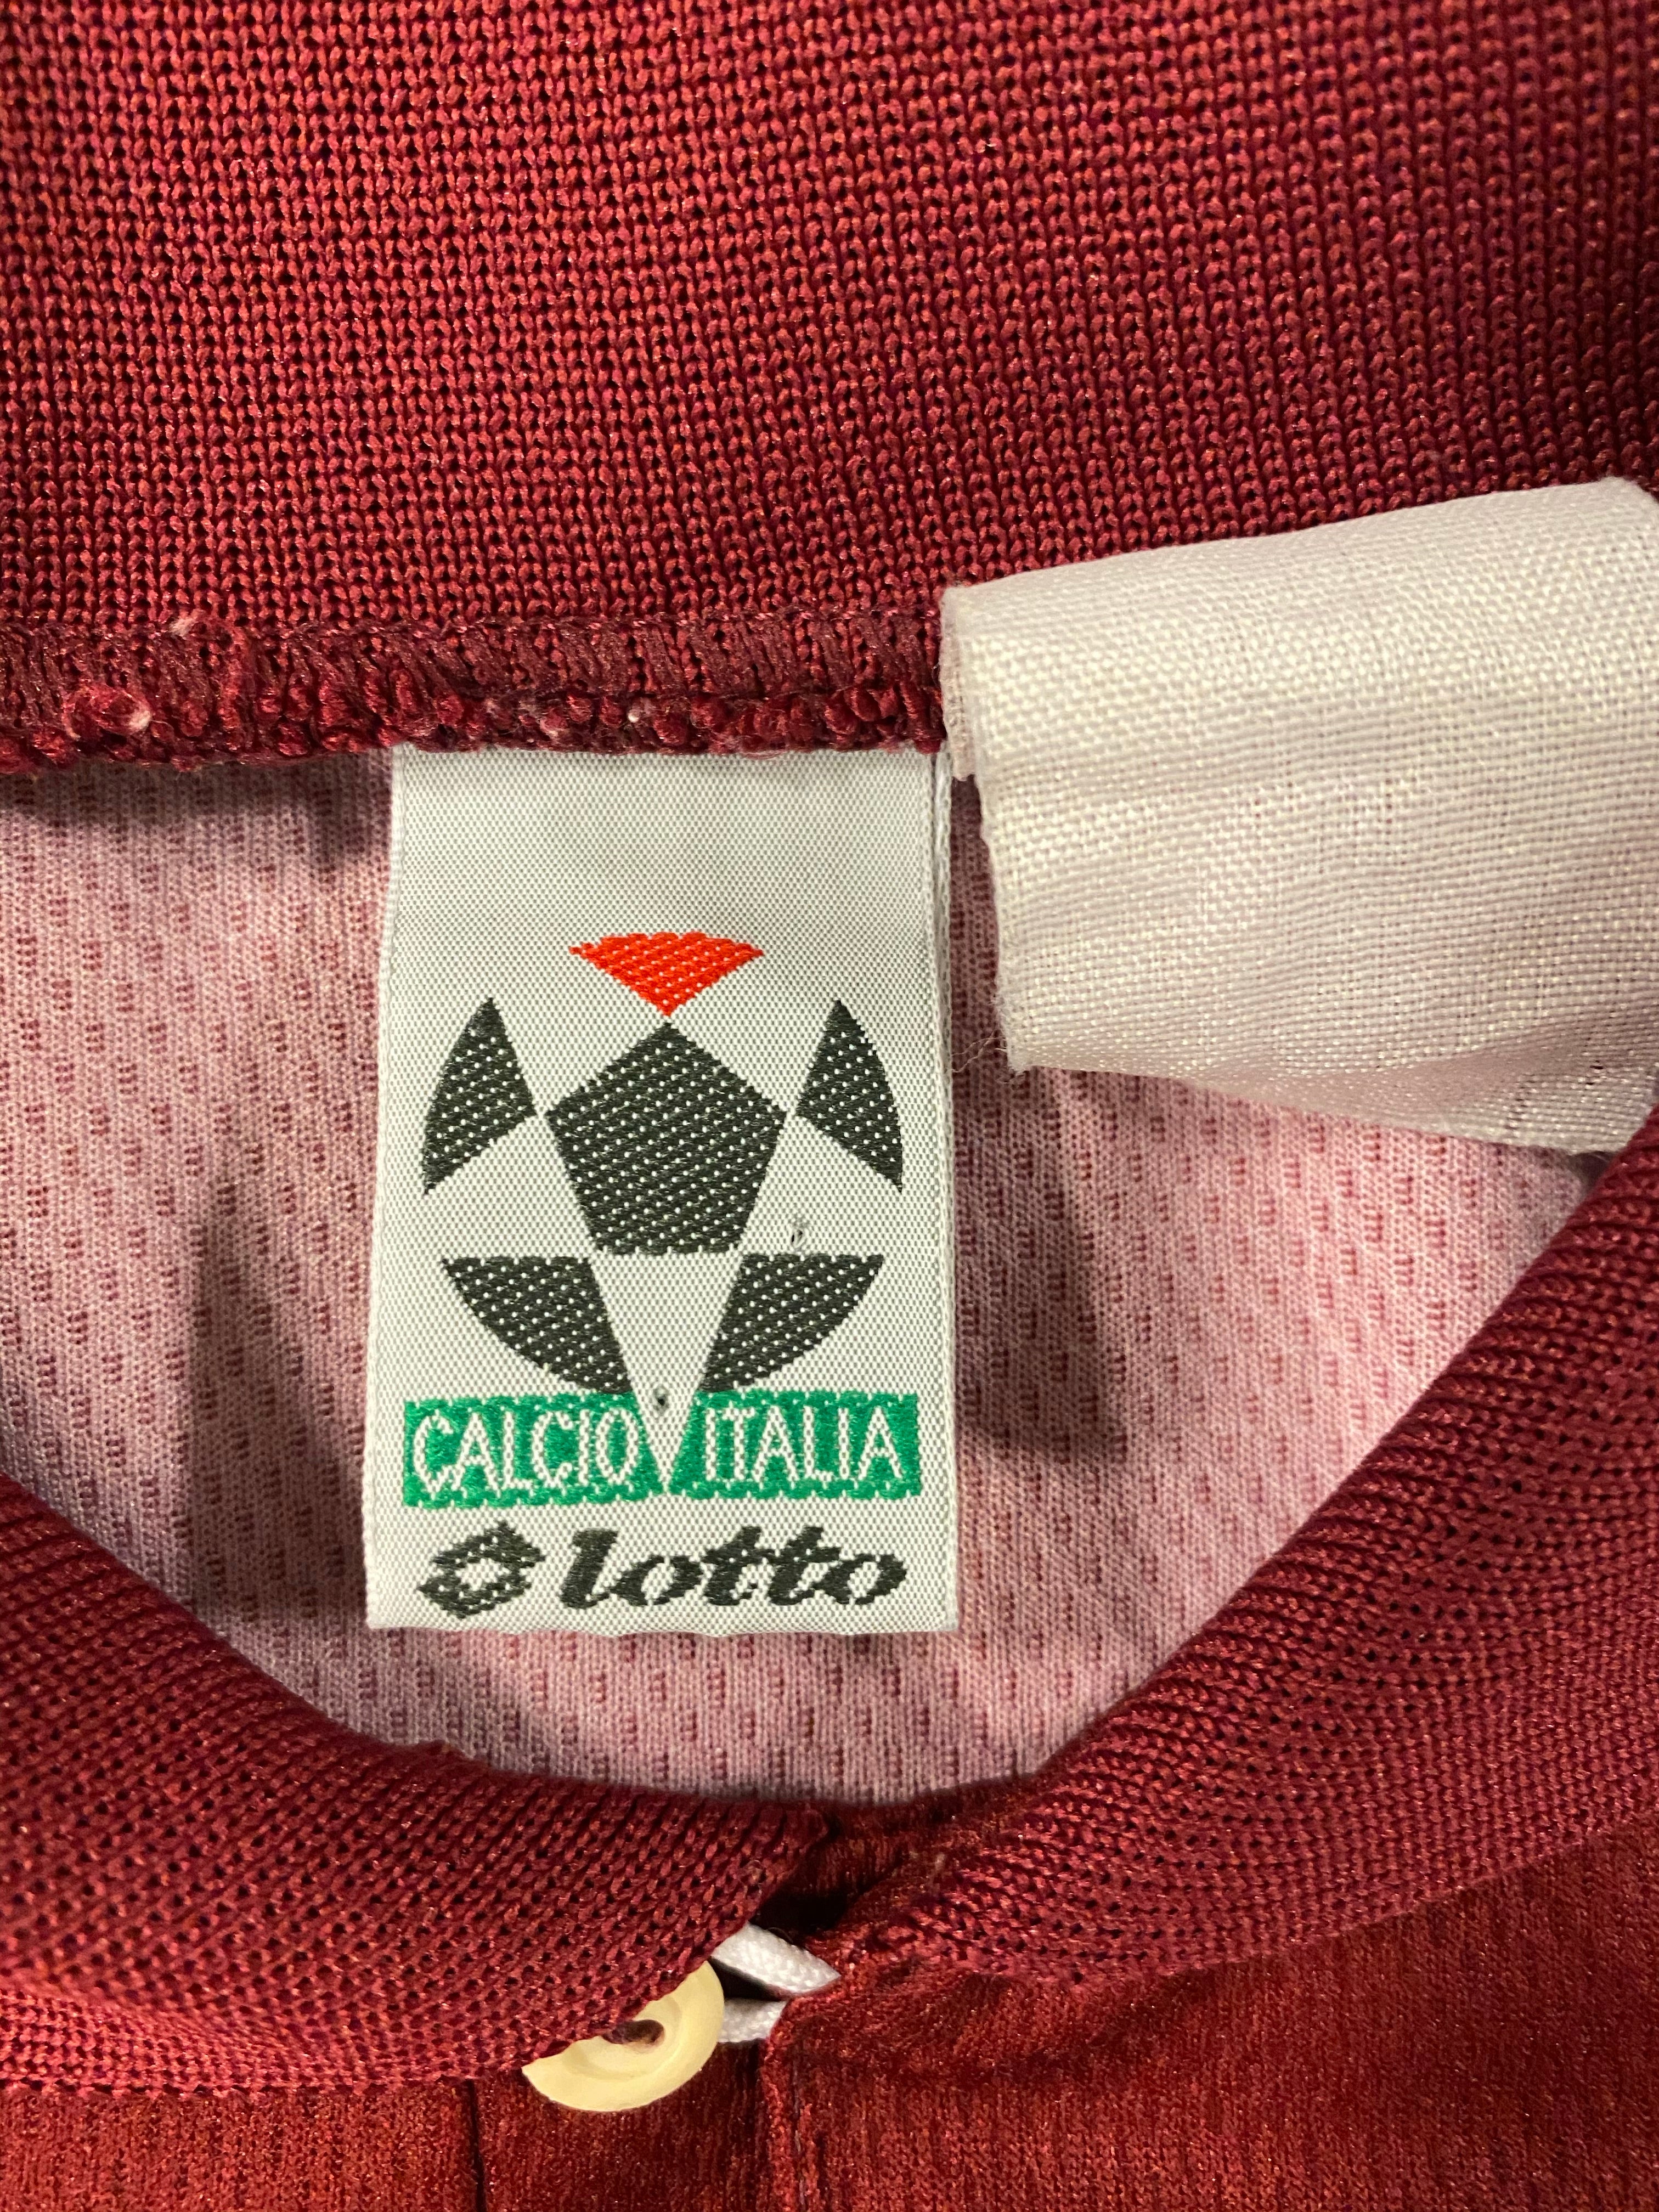 1995/96 Camiseta local del Torino (L) 9/10 